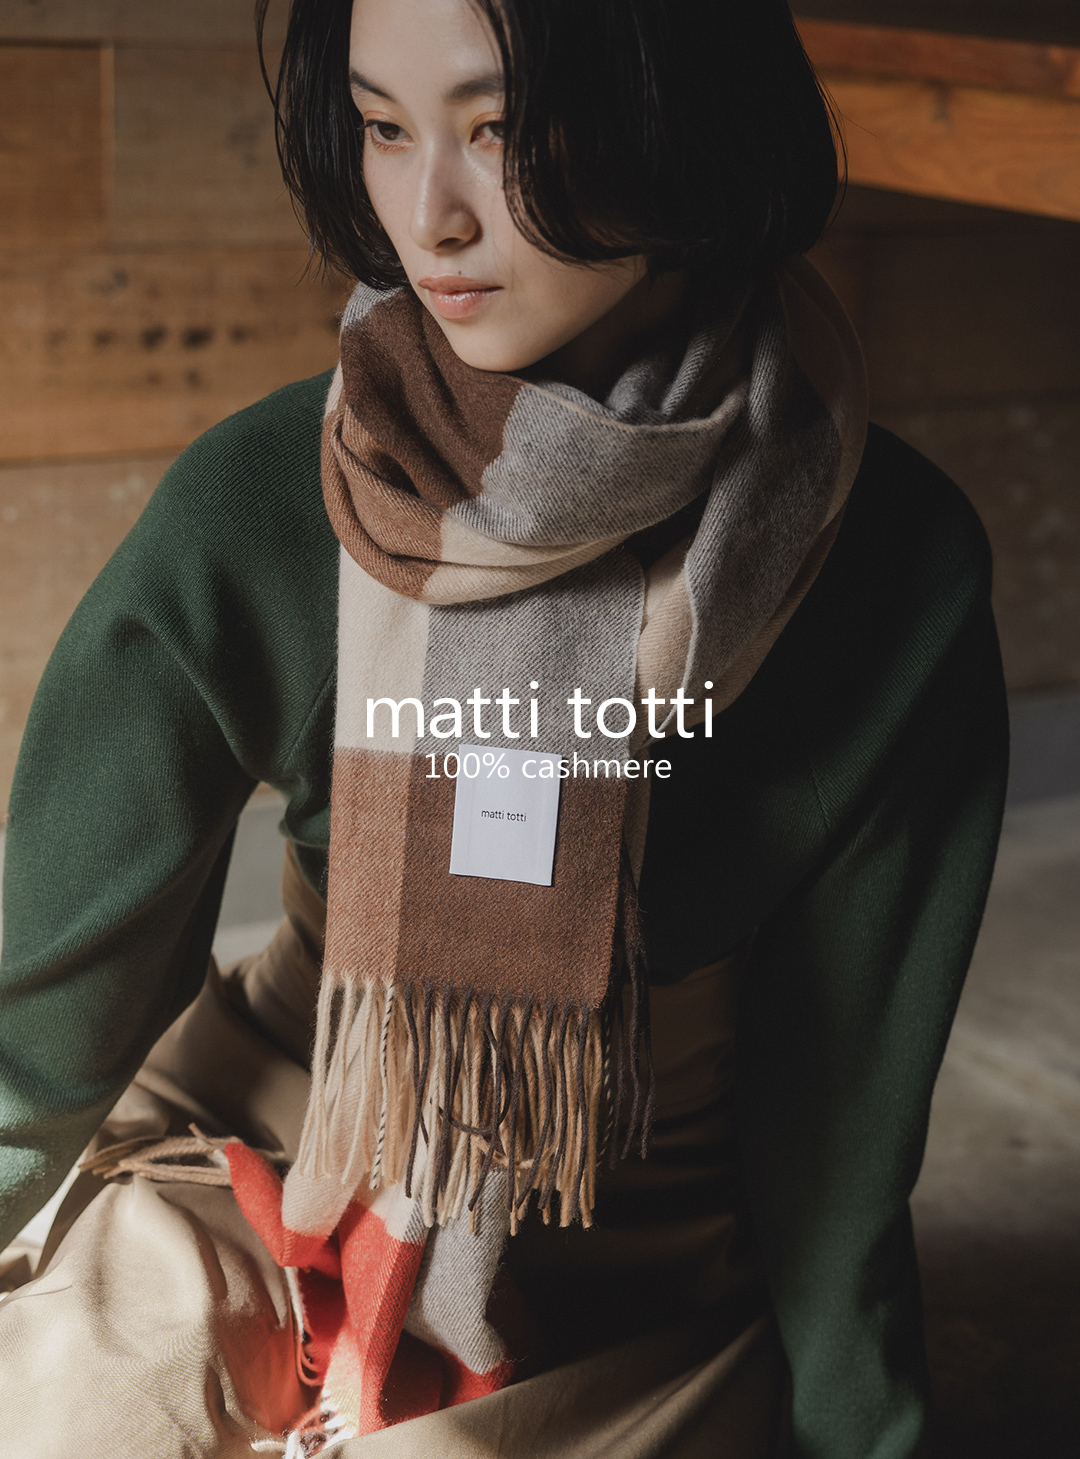 楽天市場 | matti totti - 洗練された高級カシミヤアイテムをみなさま